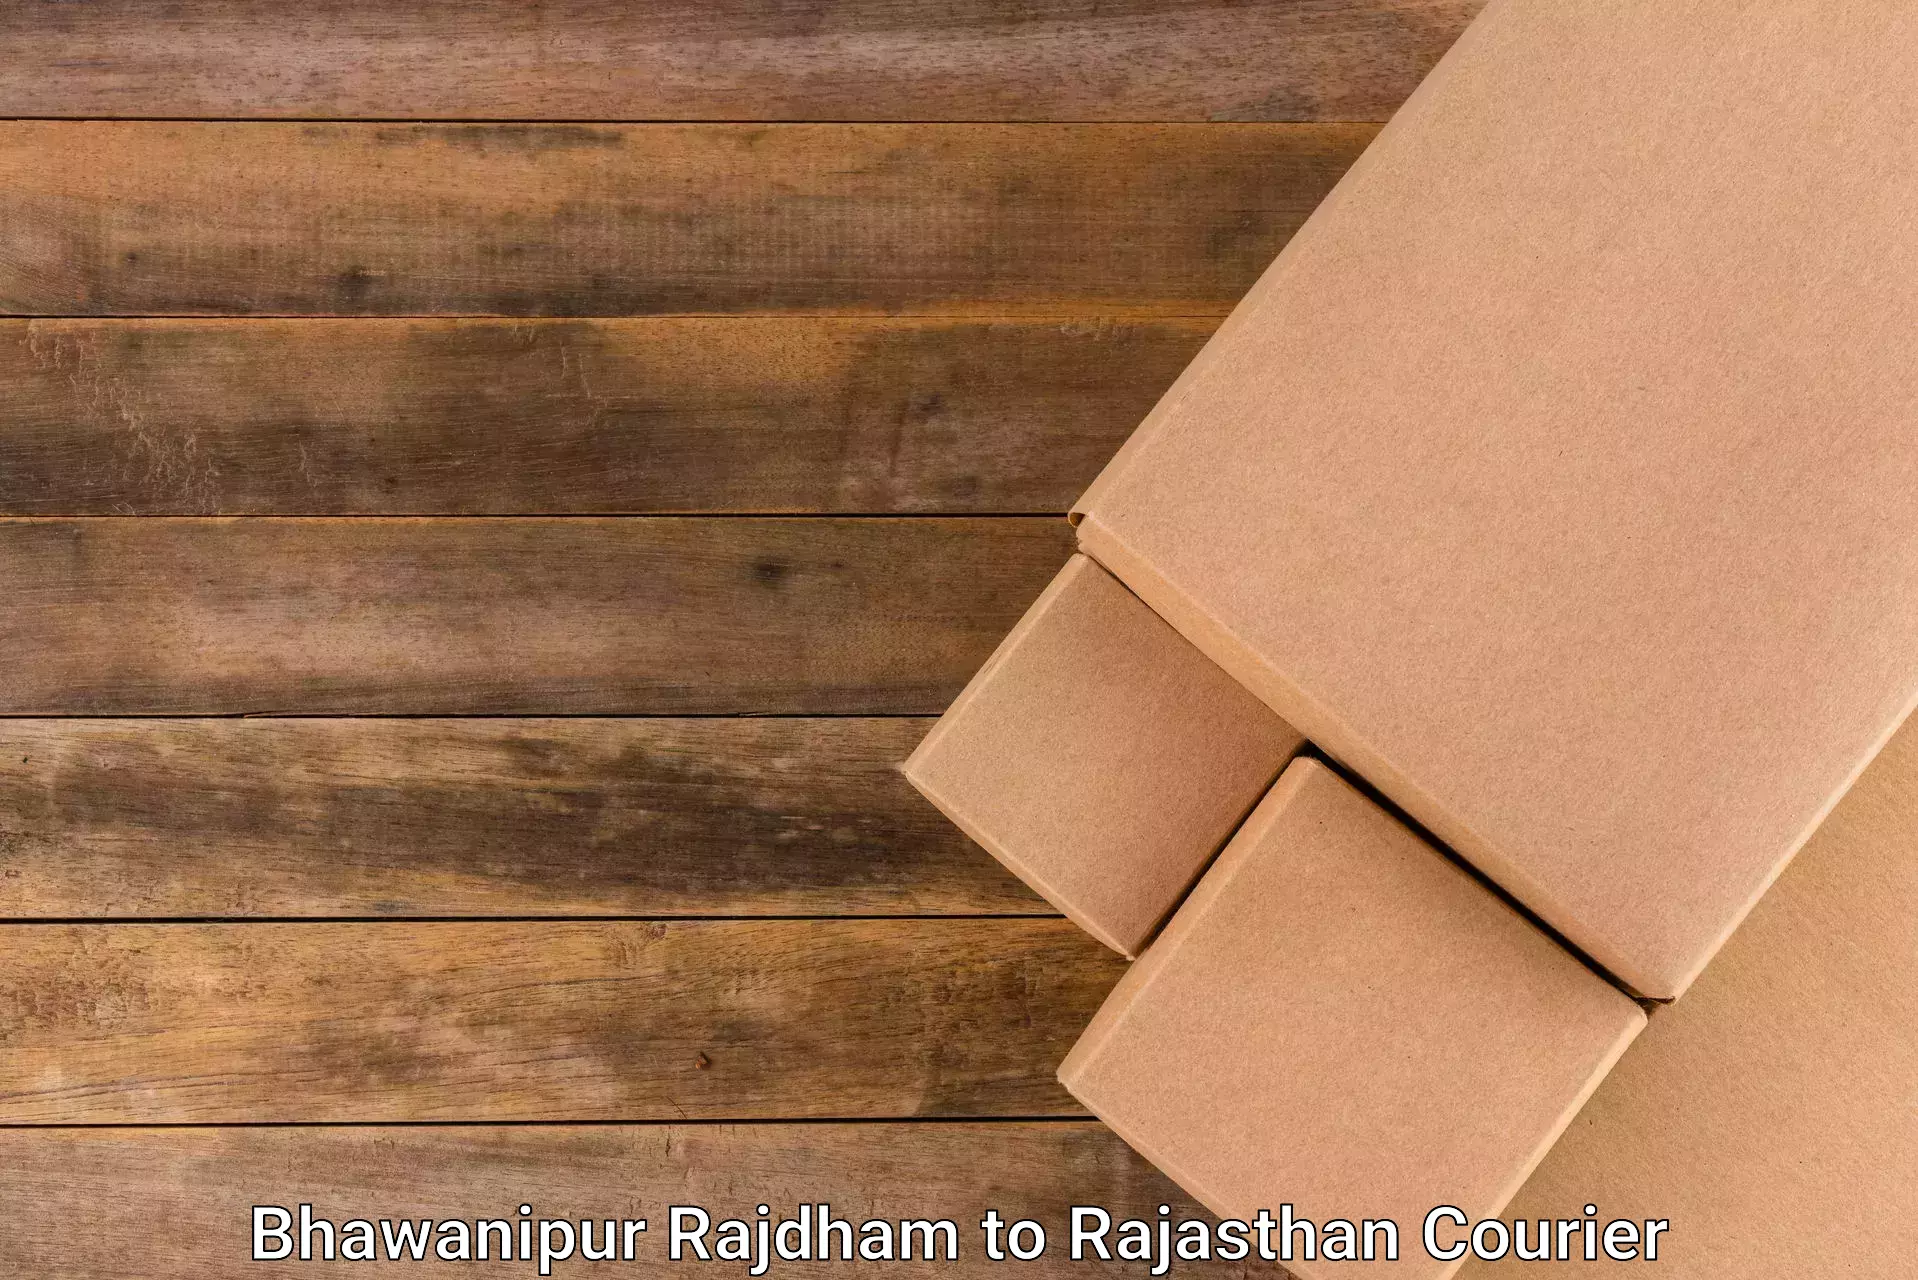 Seamless shipping service Bhawanipur Rajdham to Rajasthan